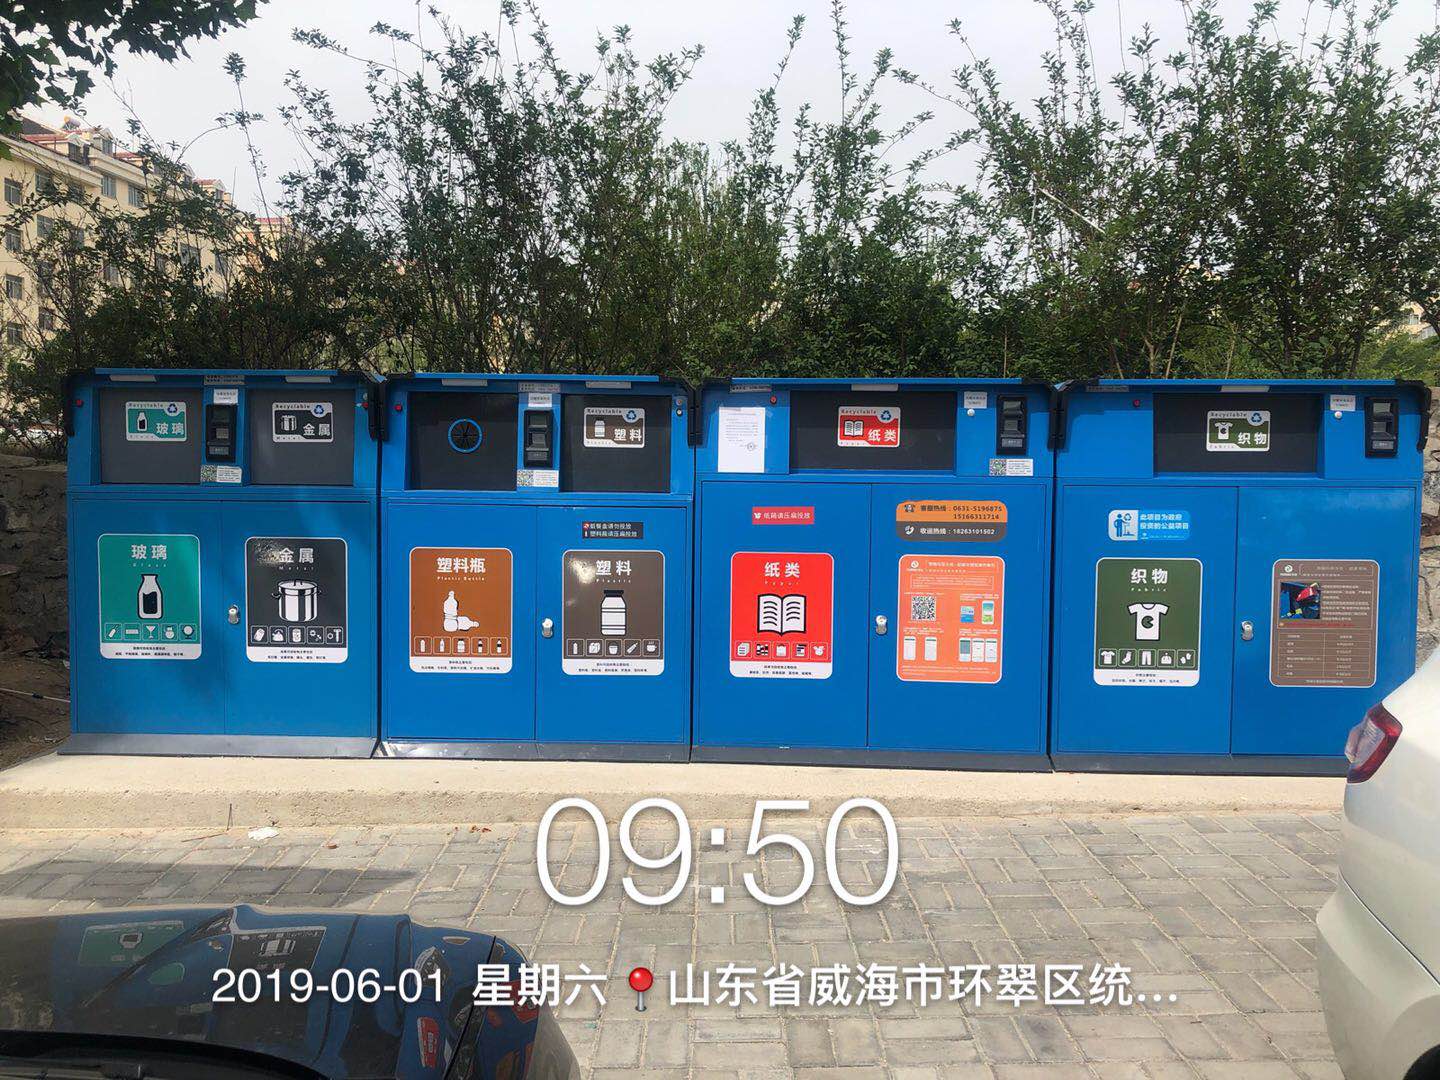 垃圾分类桶,南京垃圾分类桶,垃圾分类桶厂家,南京垃圾分类桶厂家